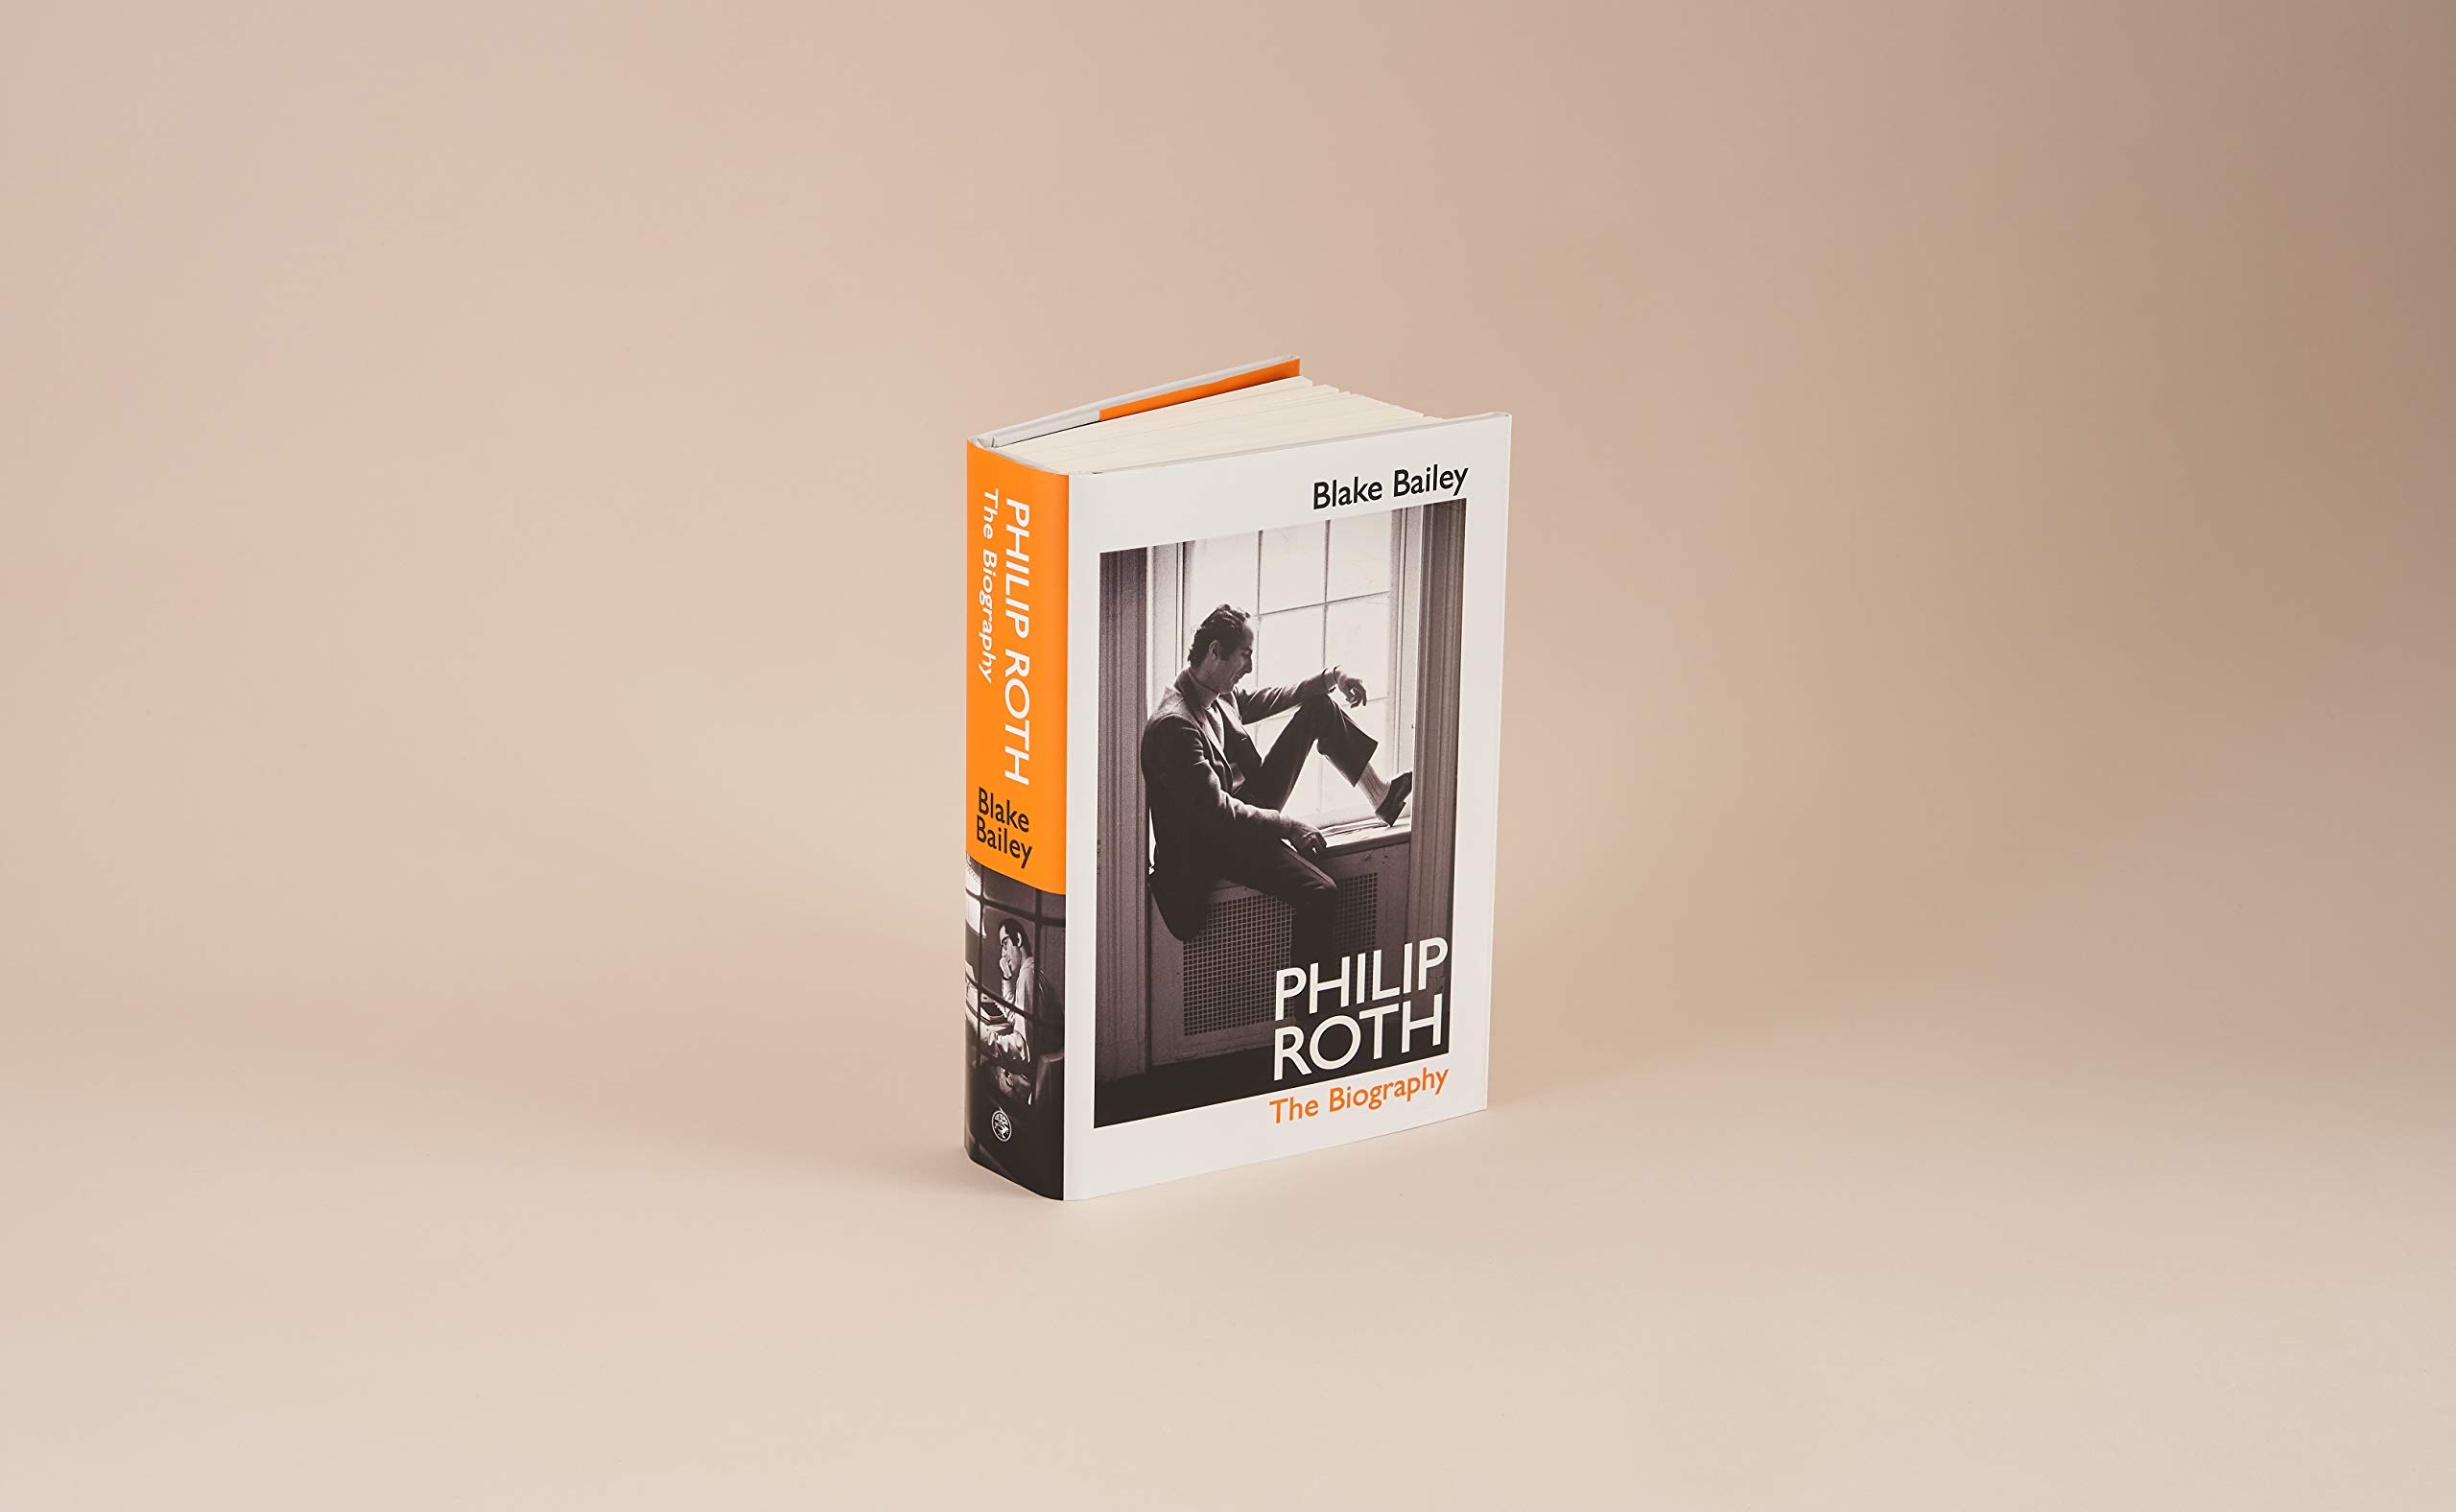 La biografía de Philip Roth, retirada momentáneamente de circulación por las acusaciones de acoso sexual contra su autor - Pablo Pardo